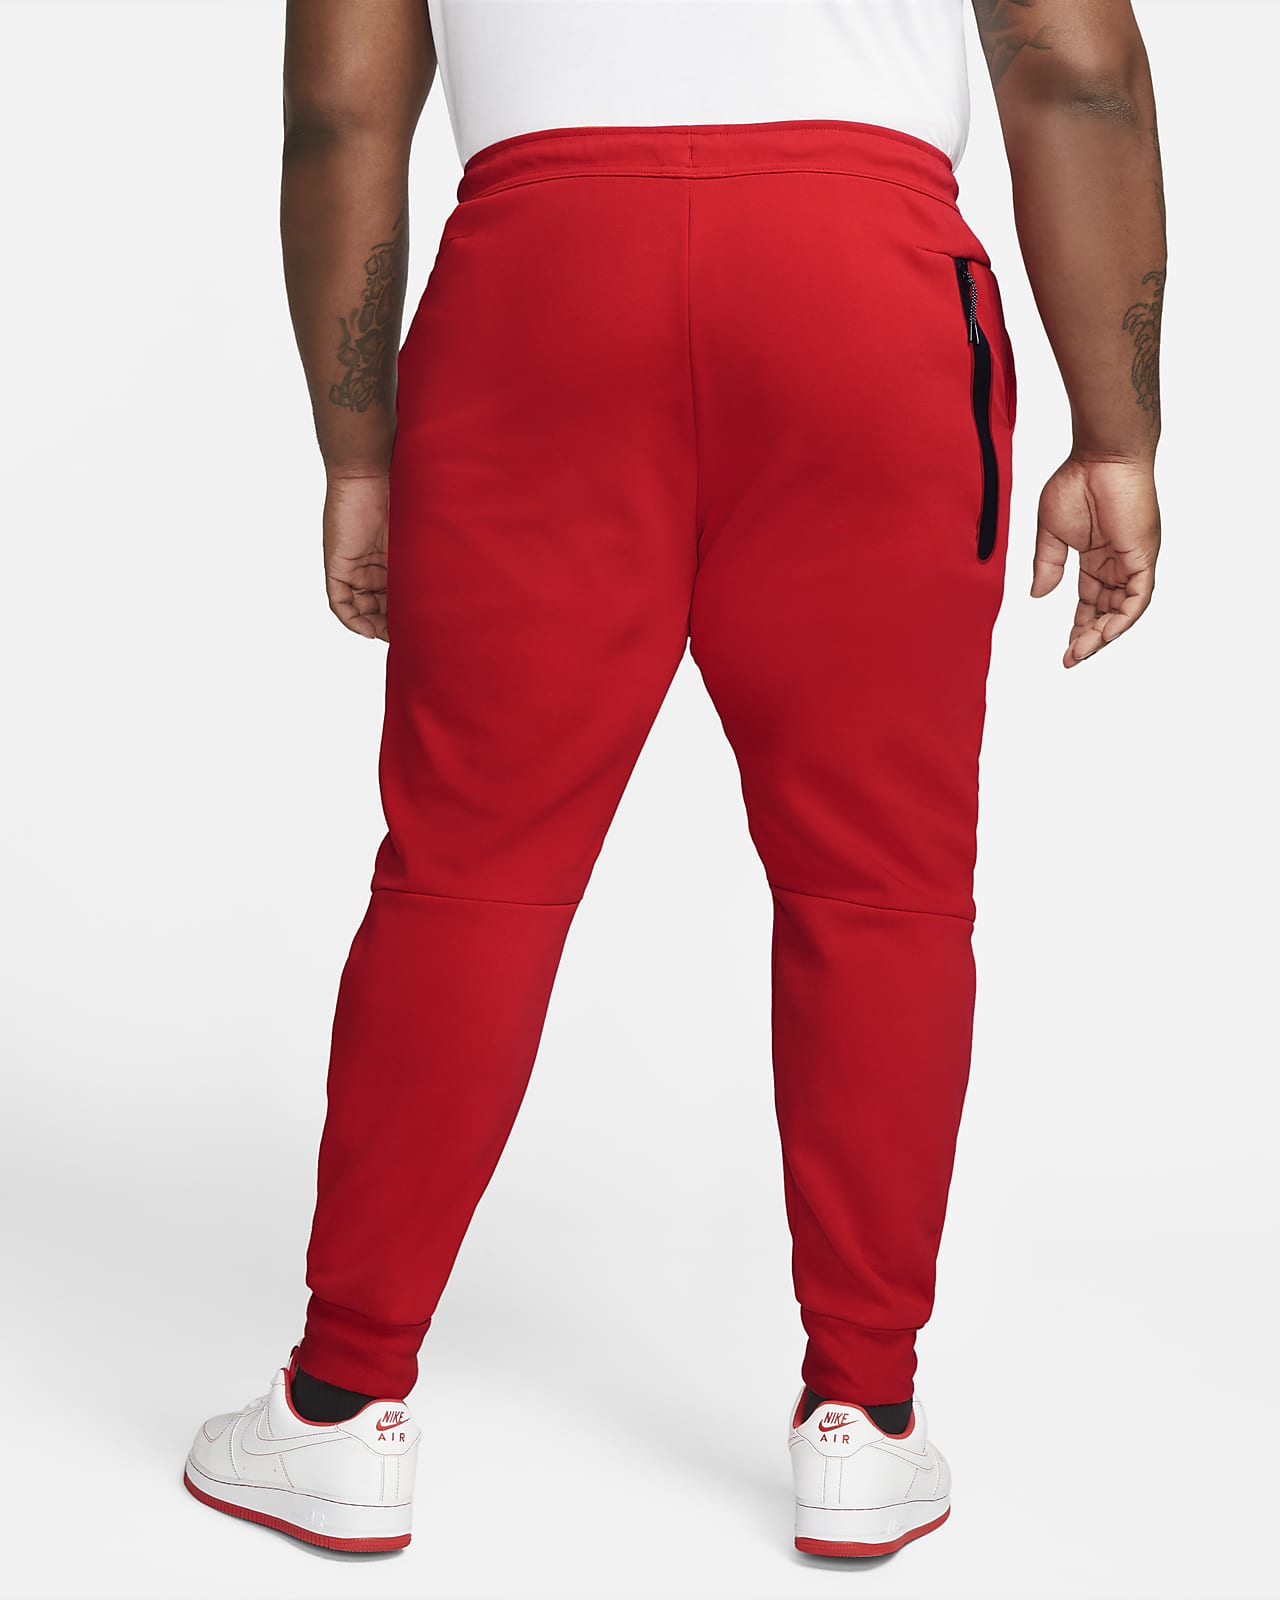 Pantalon De Jogging Nike Sportswear Tech Fleece Pour Nike FR | vlr.eng.br